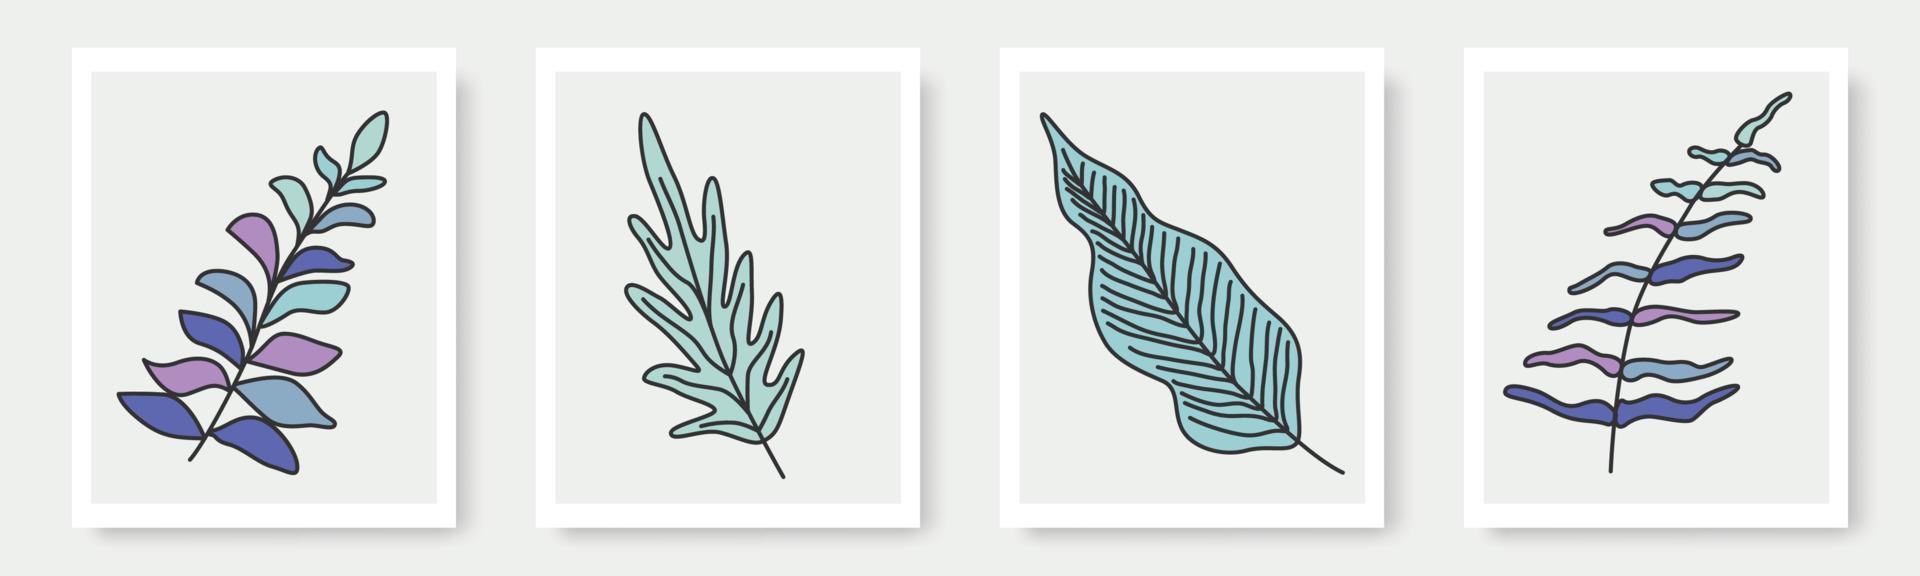 conjunto de formas dibujadas a mano y elementos de diseño de hojas florales. hojas exóticas de la selva. icono de elemento de ilustraciones de moda moderno contemporáneo abstracto vector